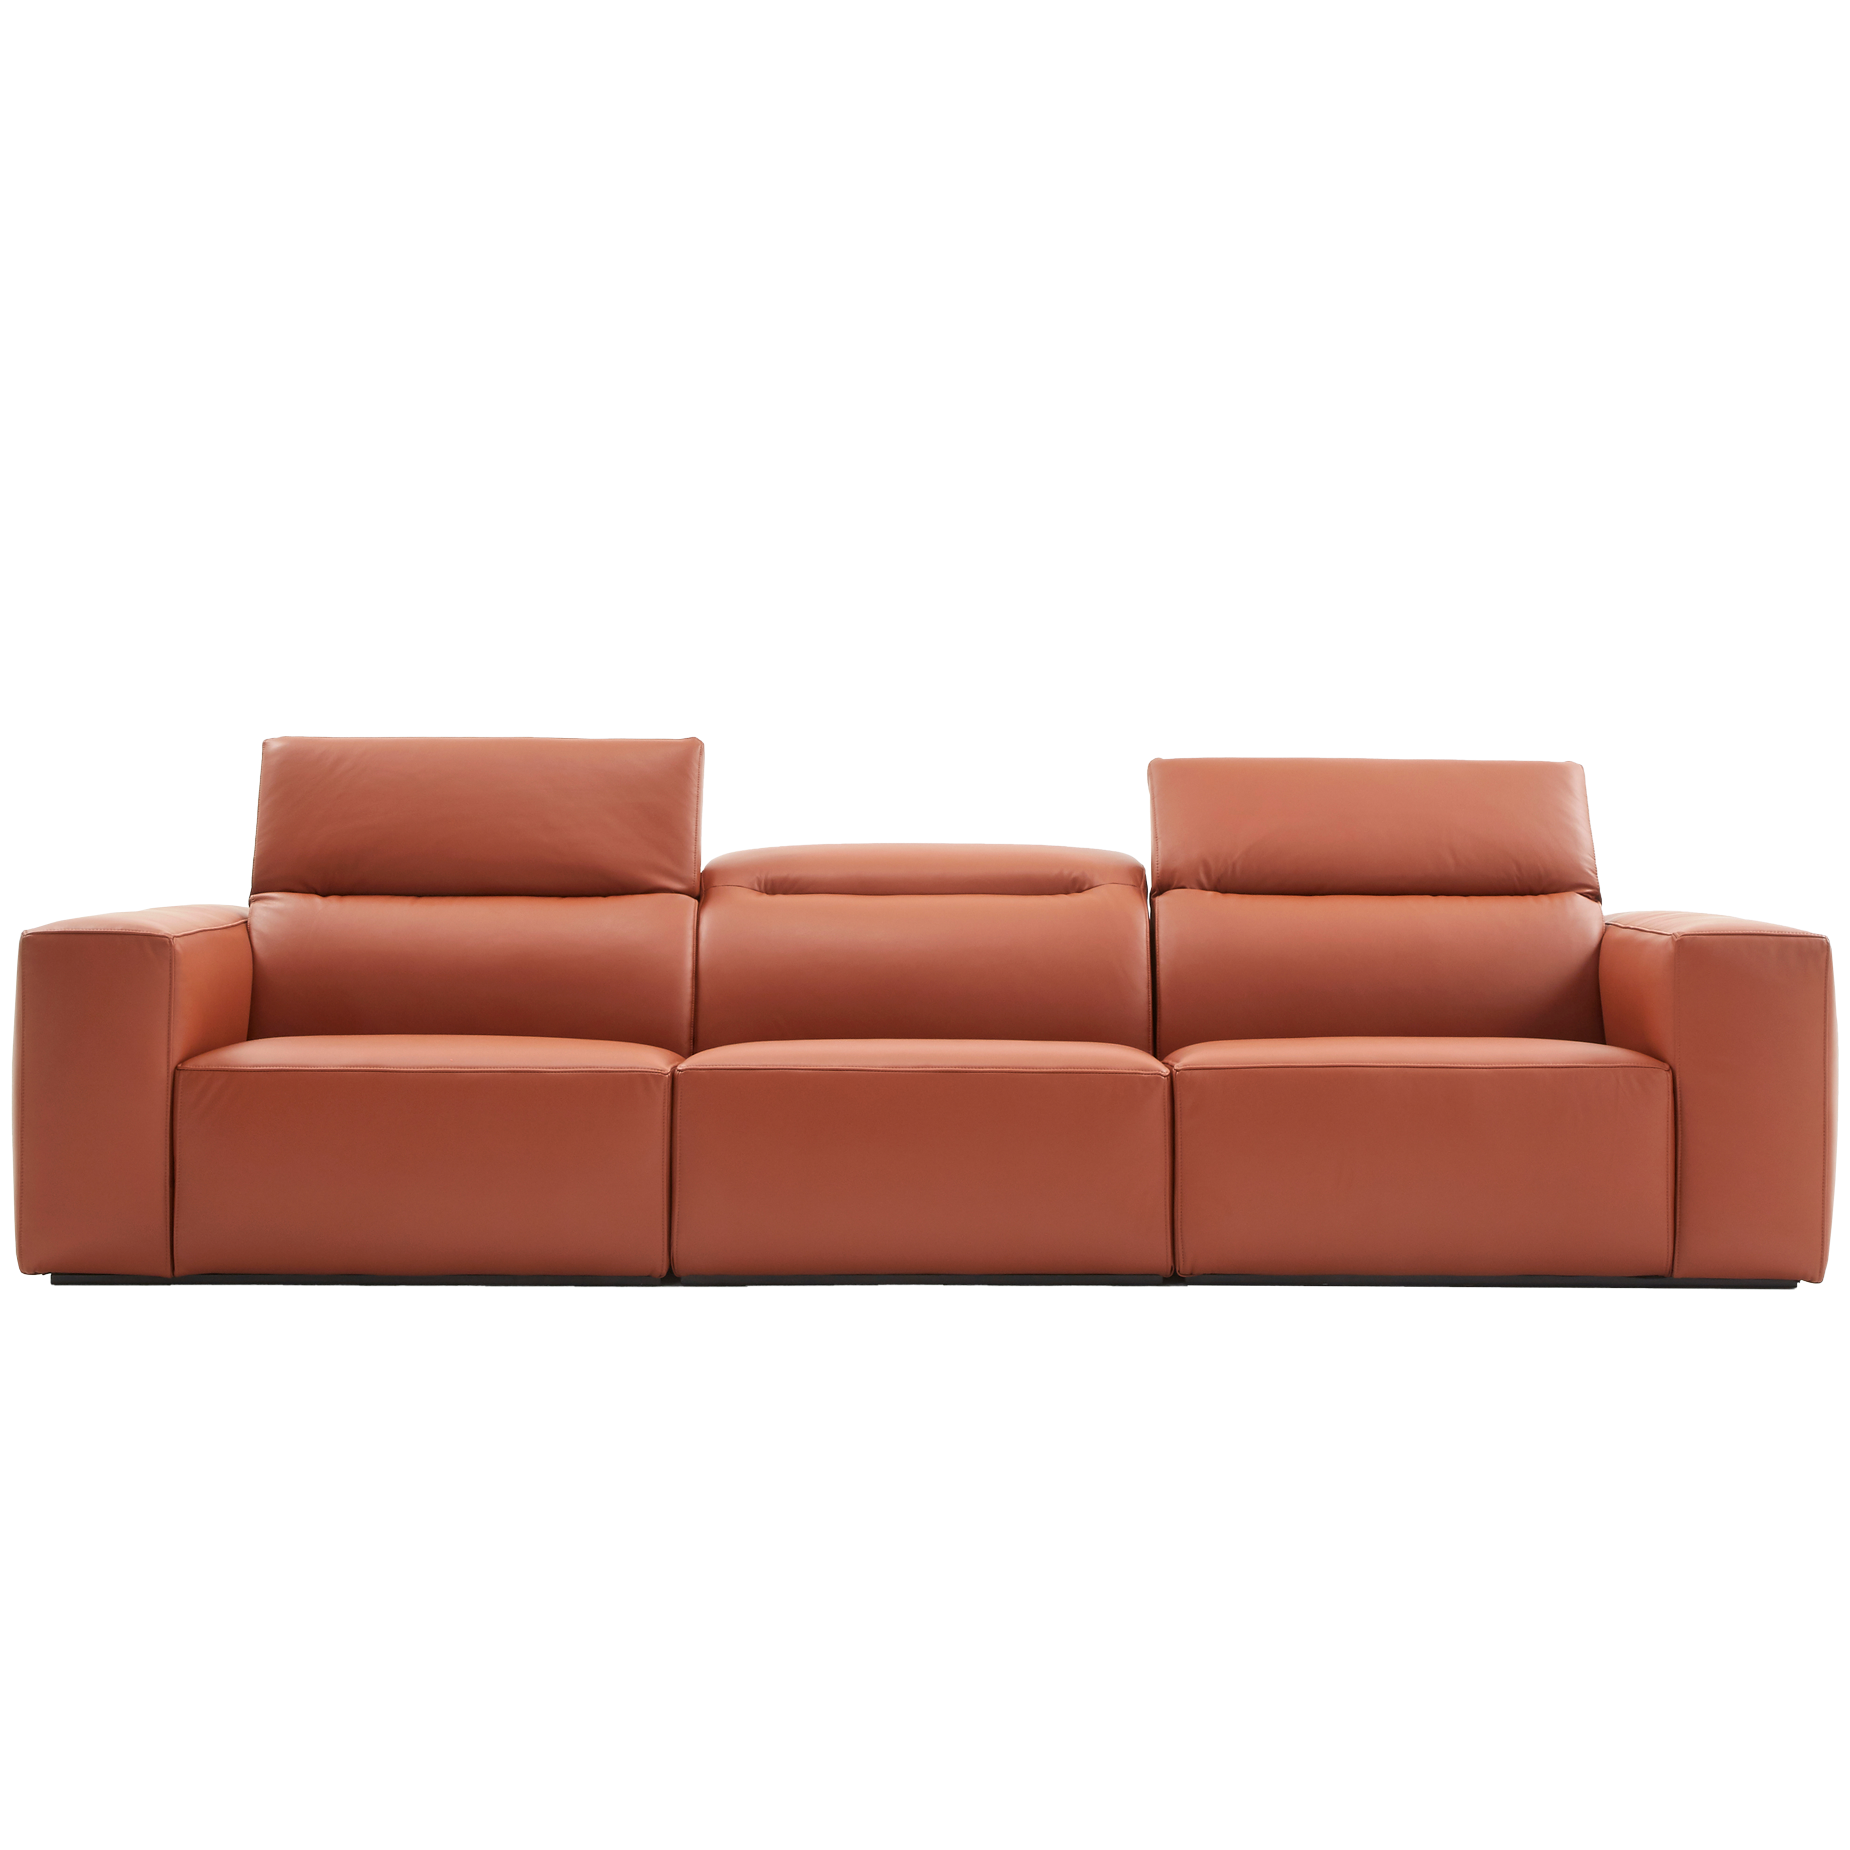 (주)도이치[4주 주문제작]           DOICH ®    PEN1 modular sofa 도이치 펜1 모듈 4인소파  /(올가죽 사양/ 7개 가죽컬렉션 선택)